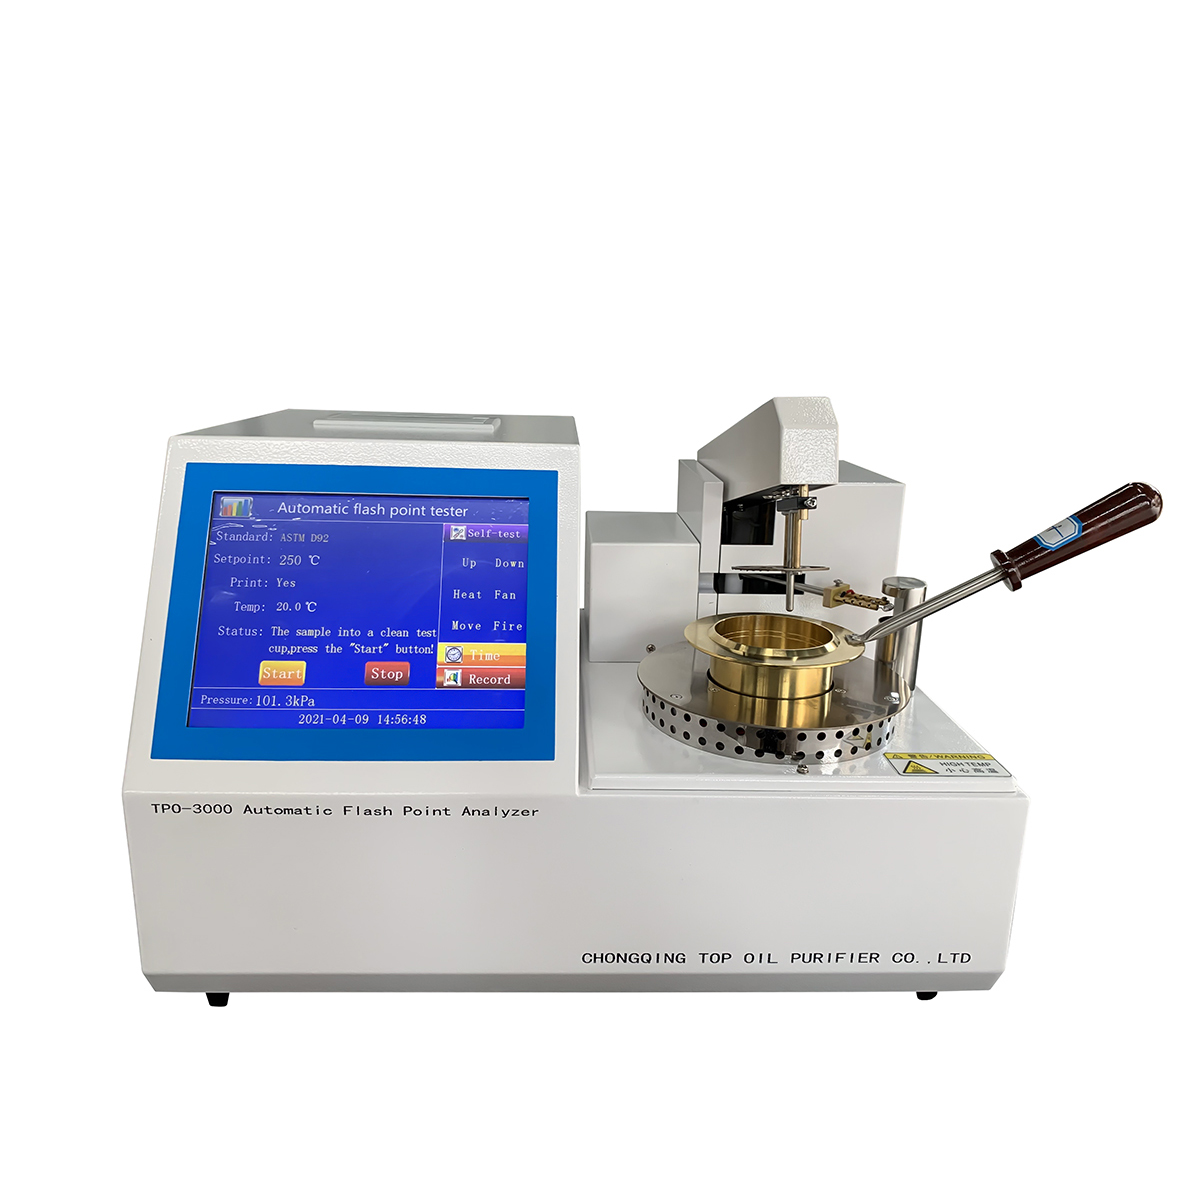 ASTM D92 TPO-3000 Полностью автоматический анализатор температуры вспышки (открытый тигель)